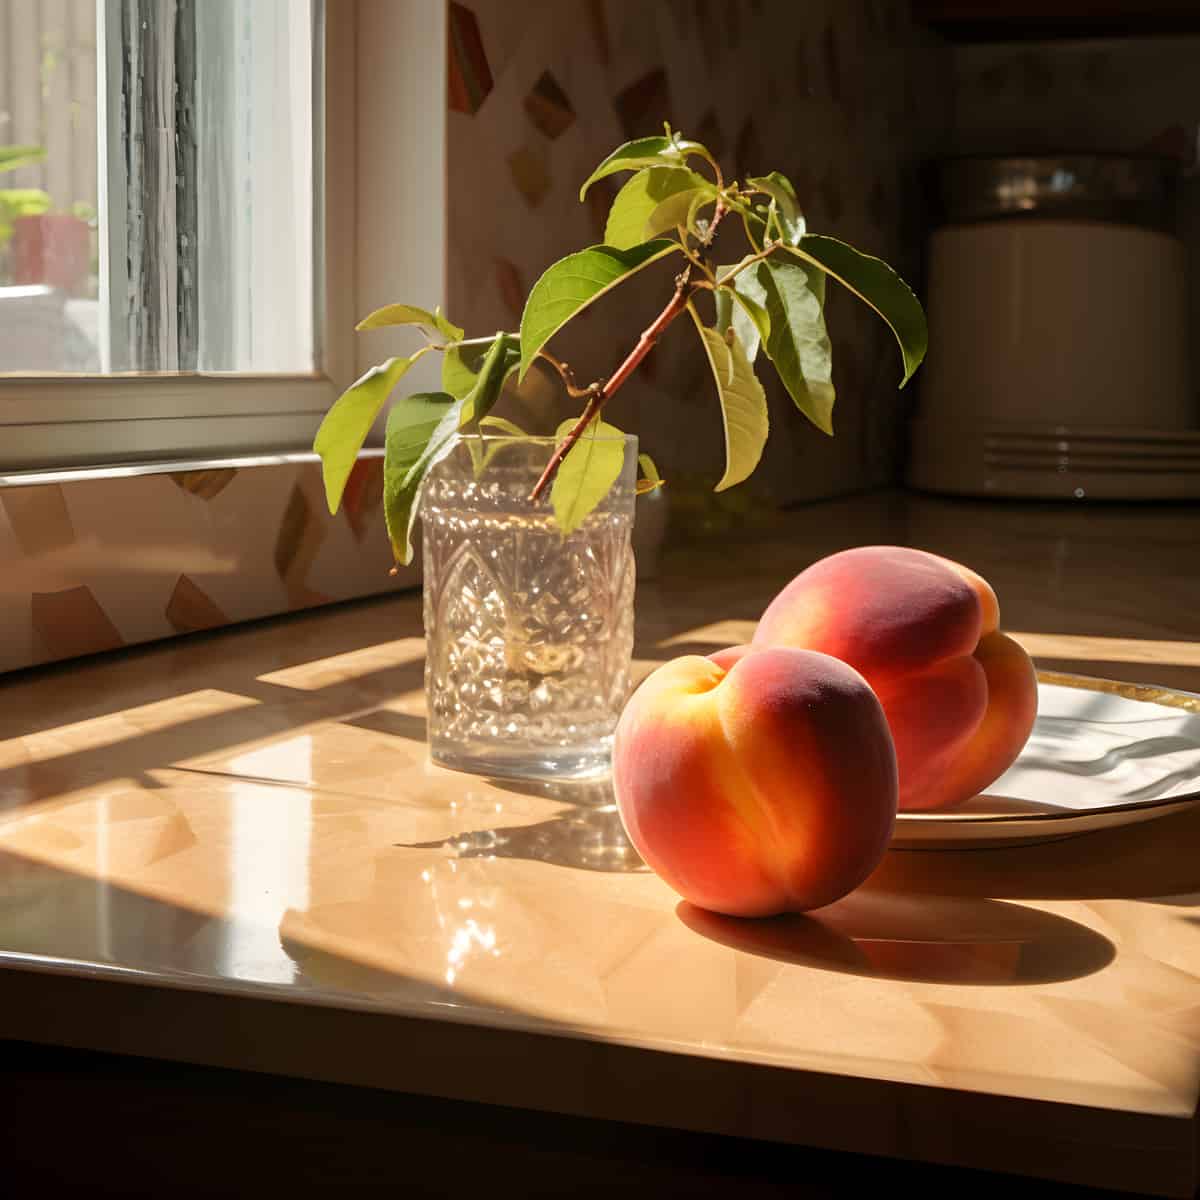 Gansu Peach on a kitchen counter